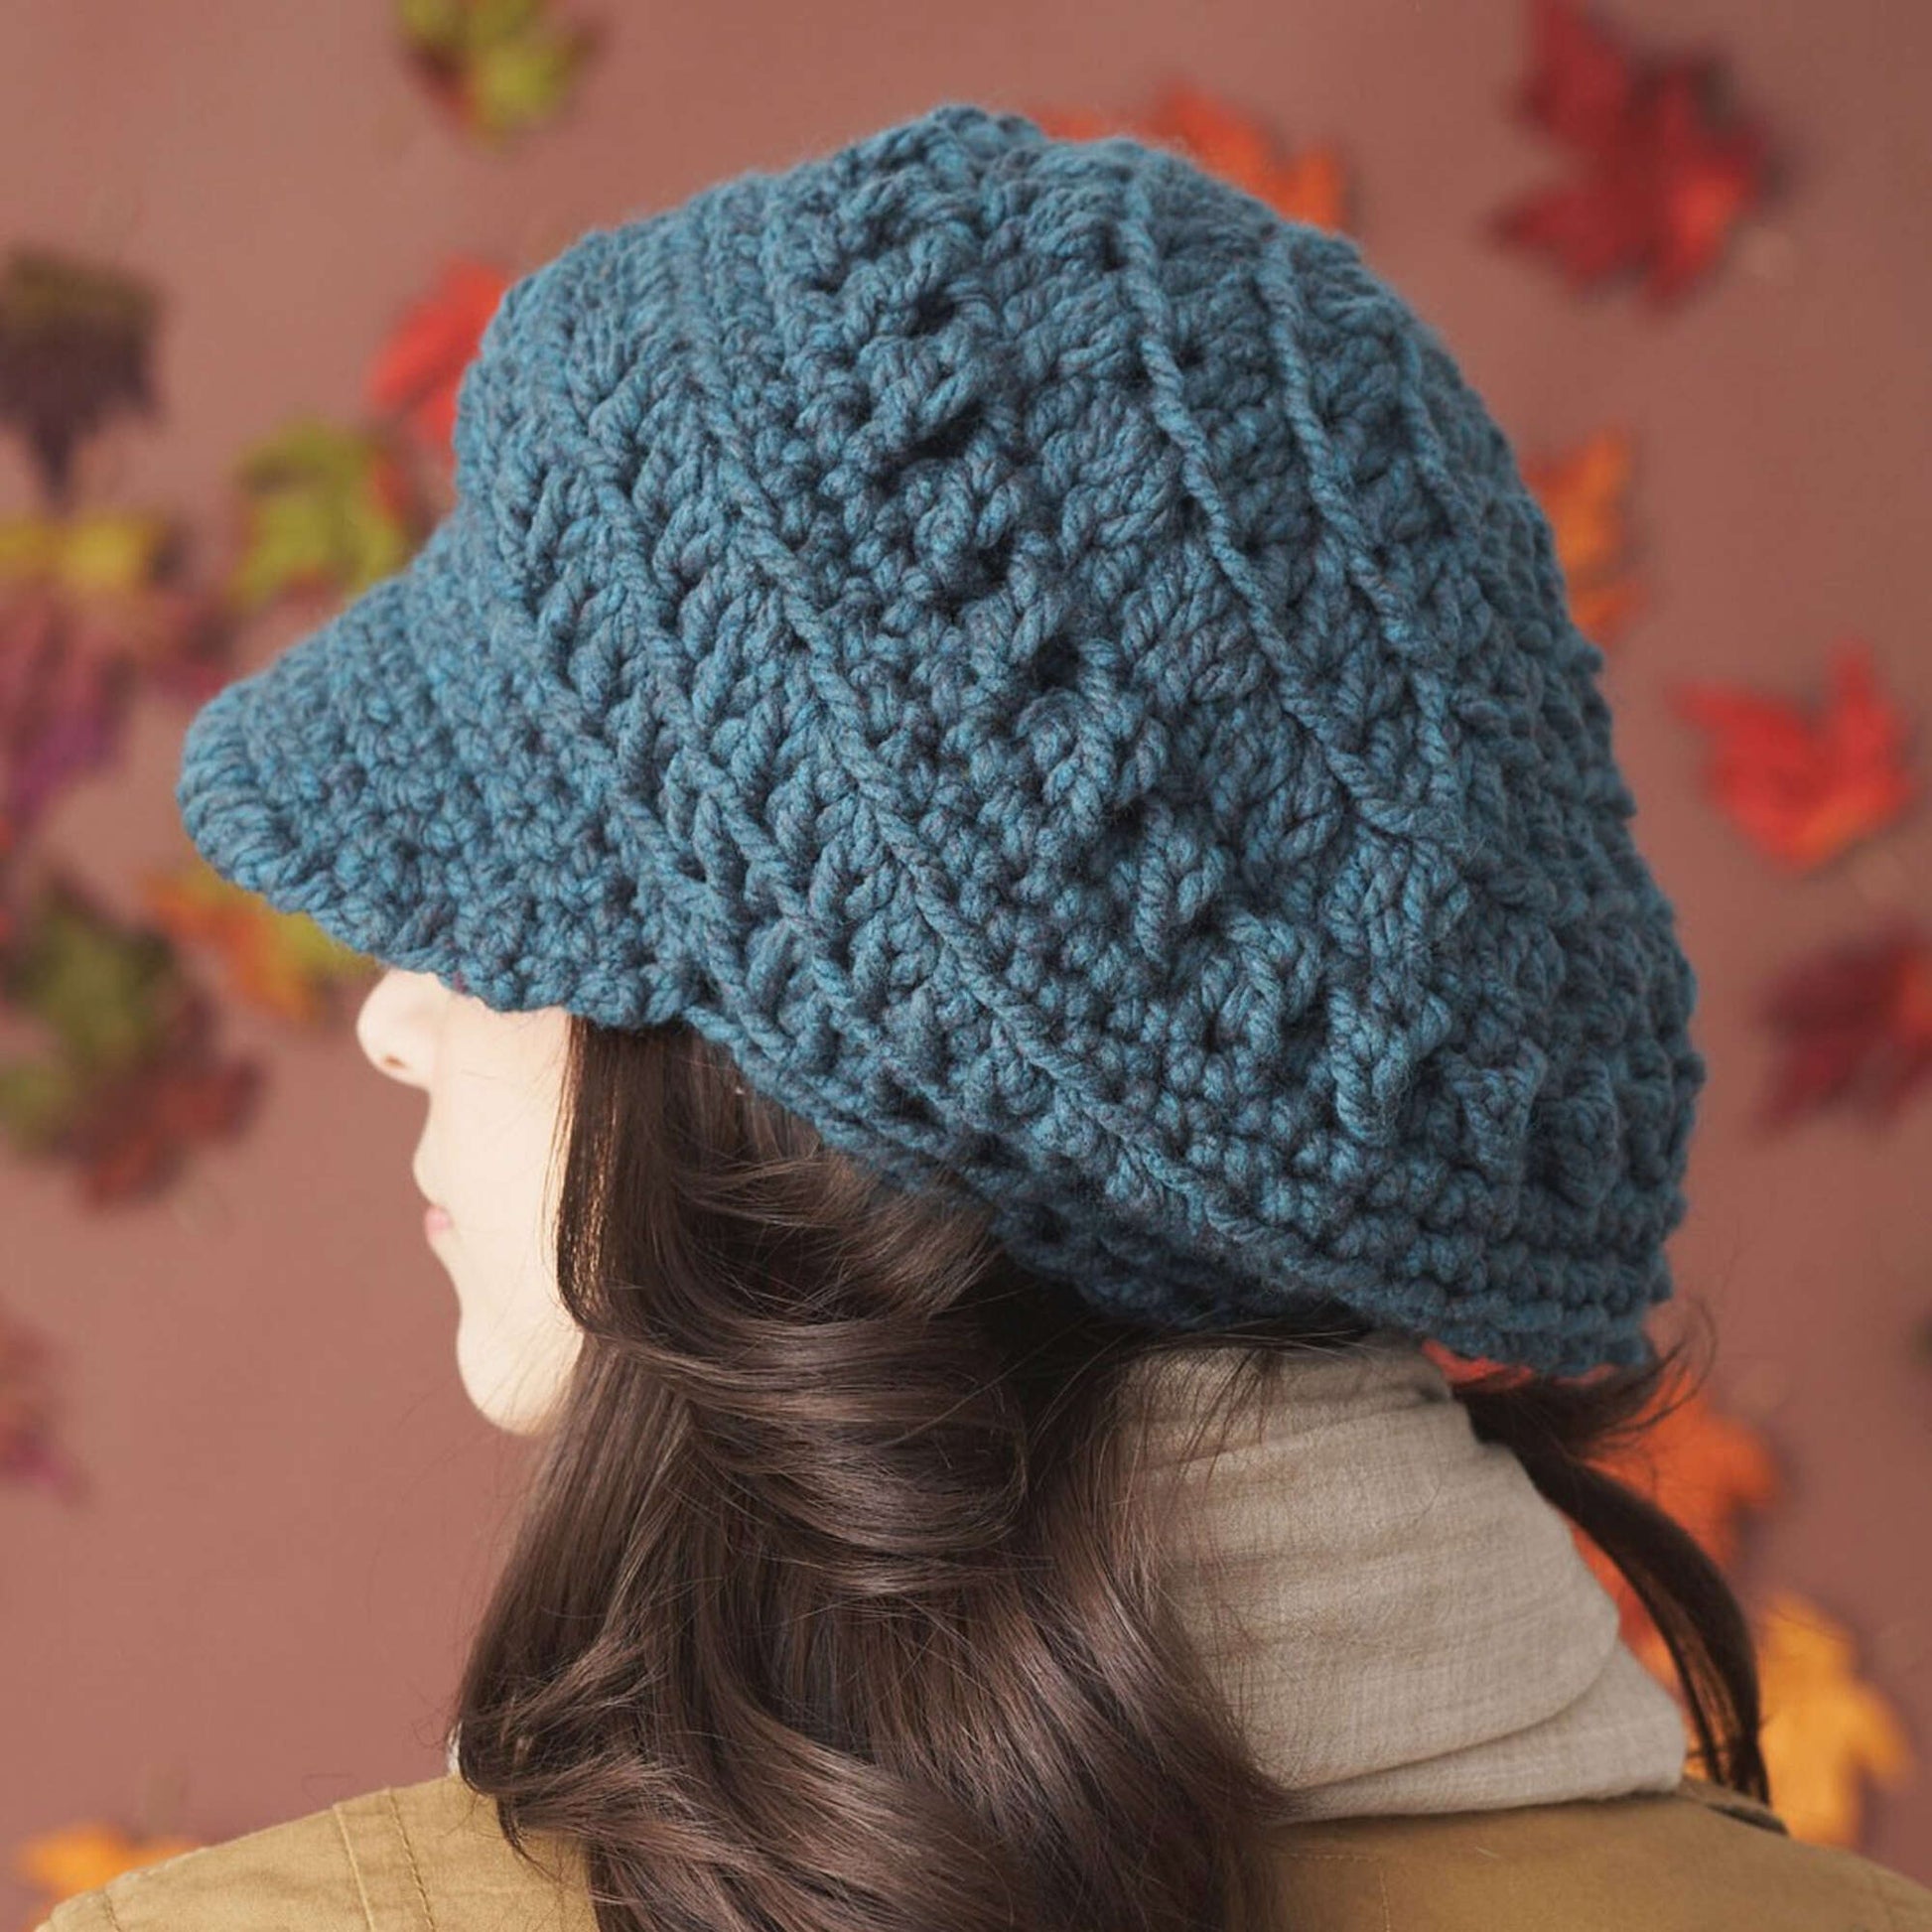 Free Bernat Crochet Slouchy Peaked Hat Pattern